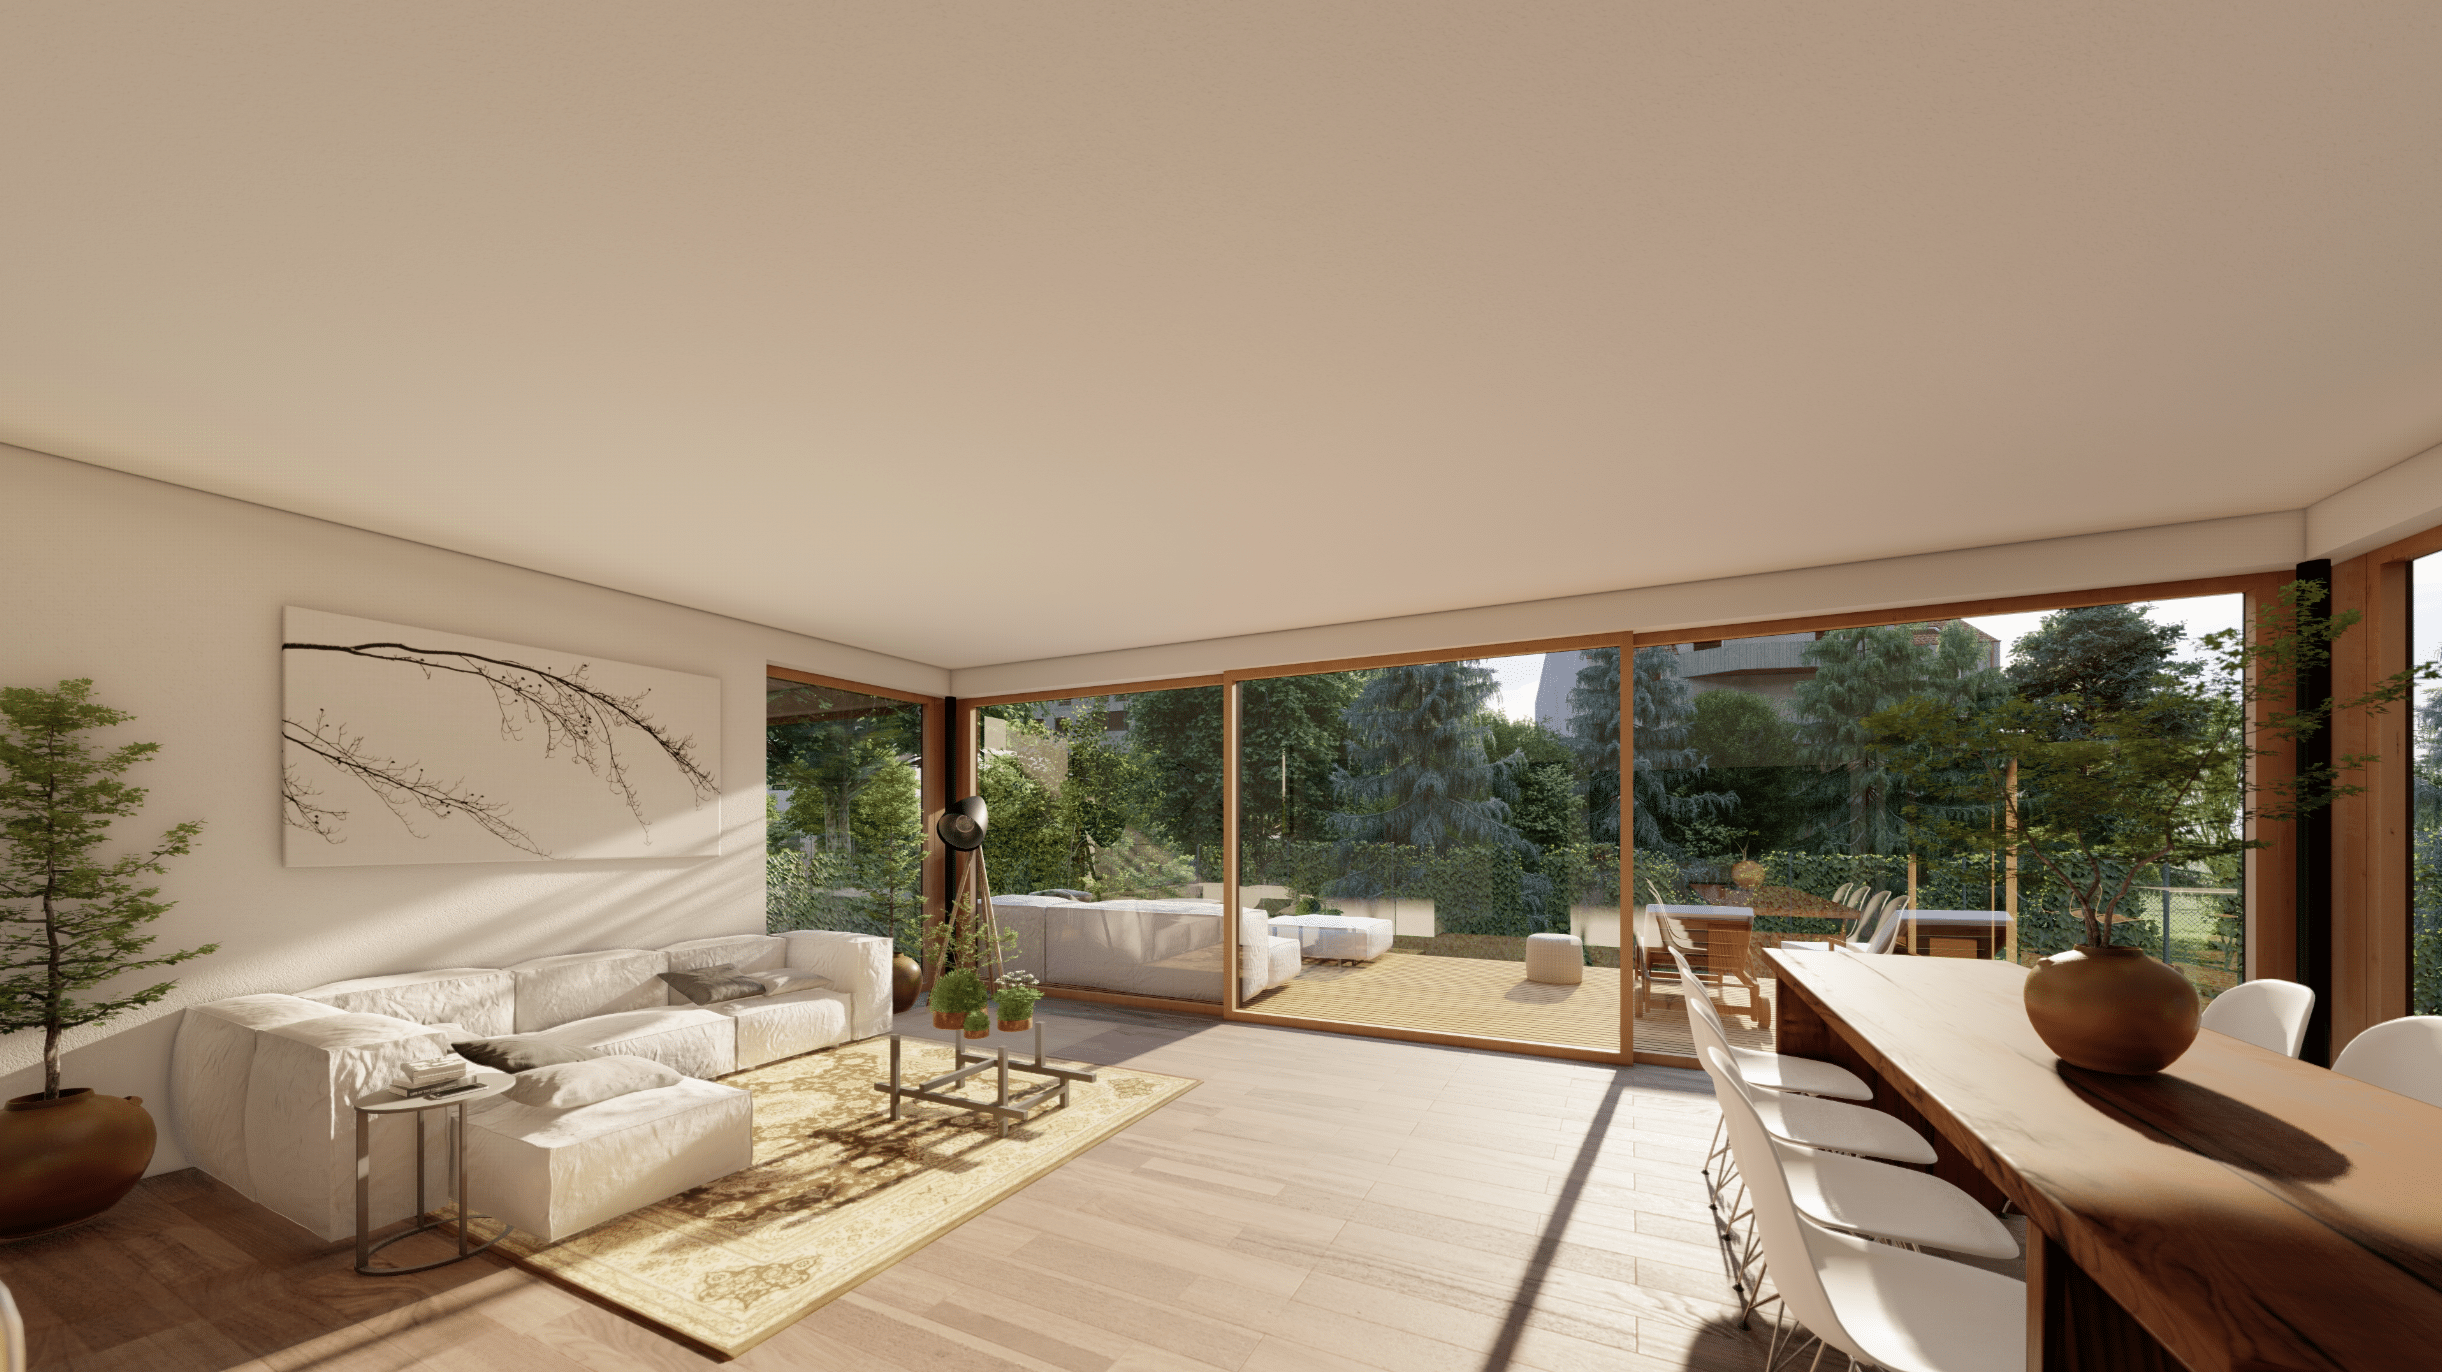 AL Architekt ZT zeigt ein vollverglastes Wohnzimmer in Naturtönen, einer weissen Couch und einer langen Tafel mit weissen Stühlen.